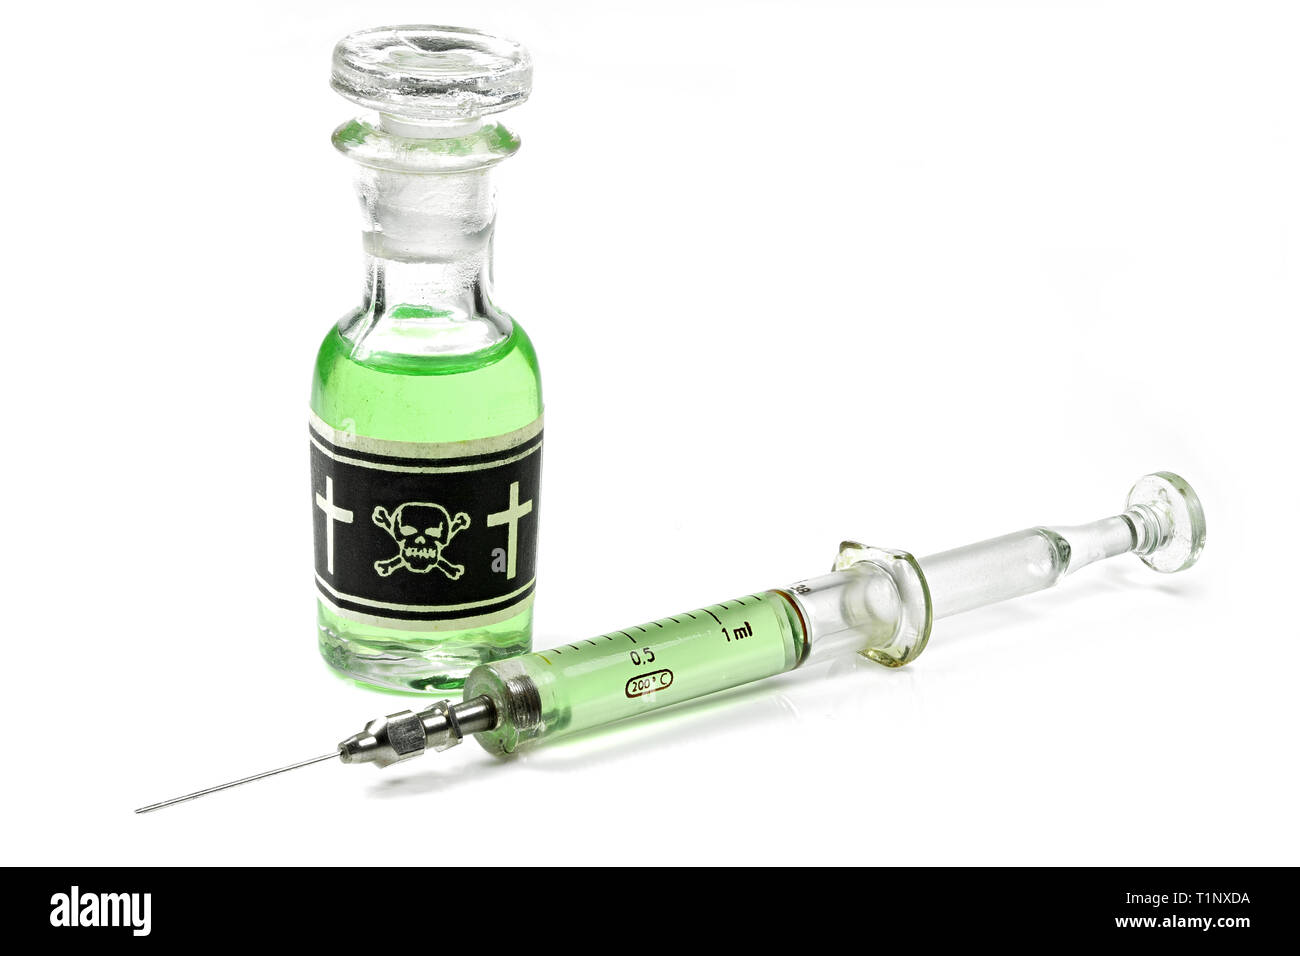 vintage bottle of poison with glass syringe isolated on white background Stock Photo